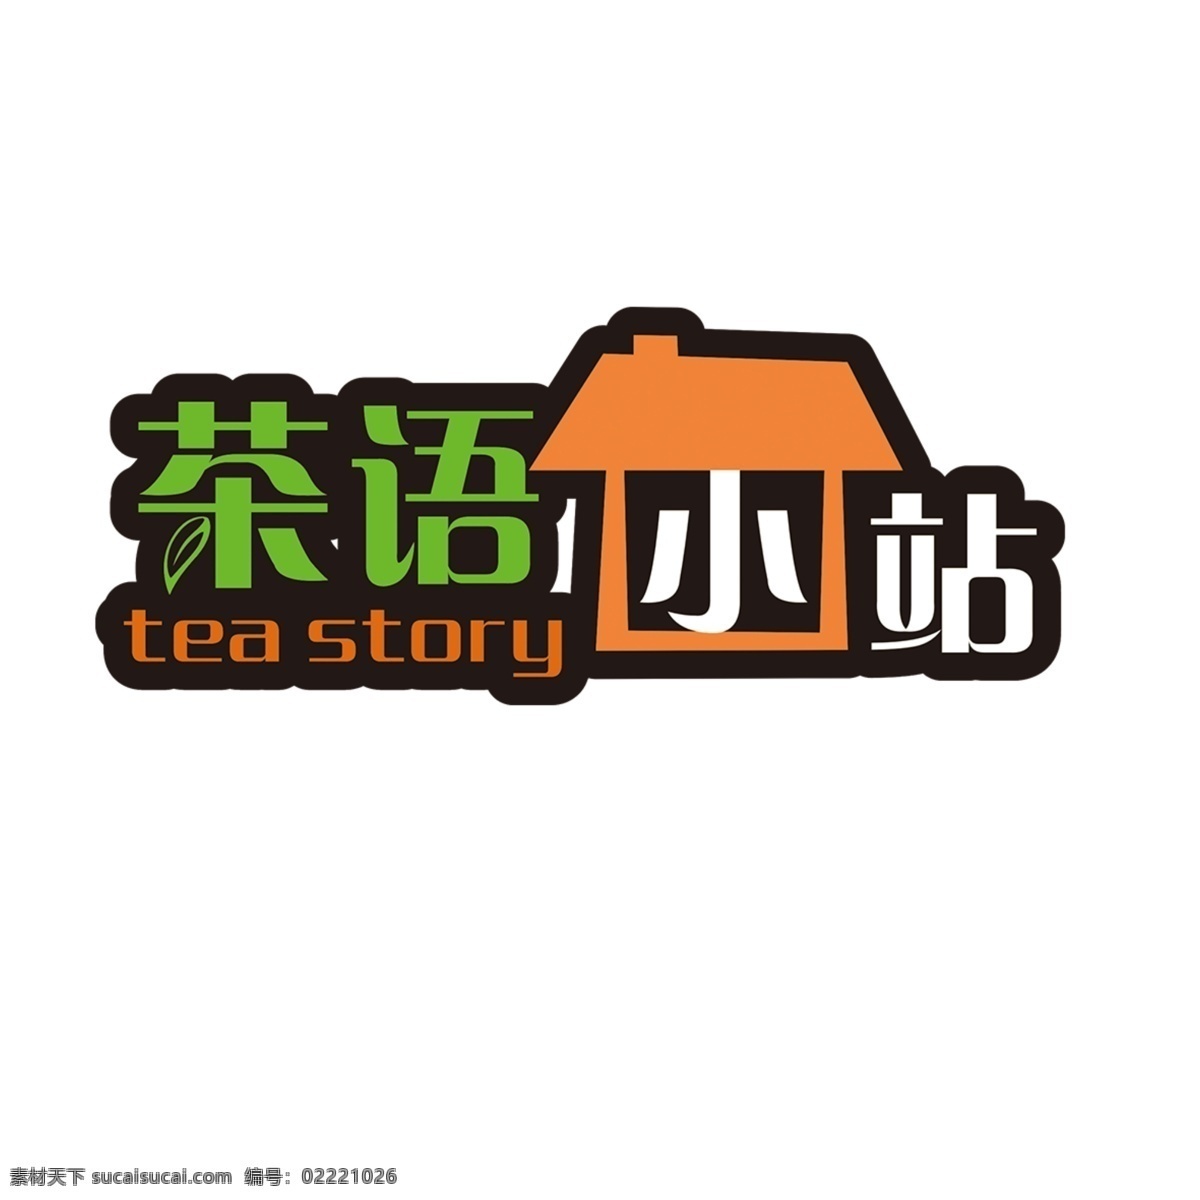 茶 语 小站 logo 茶语小站 小吃店 冰淇淋单 招牌logo 美食店 招牌 标志图标 企业 标志